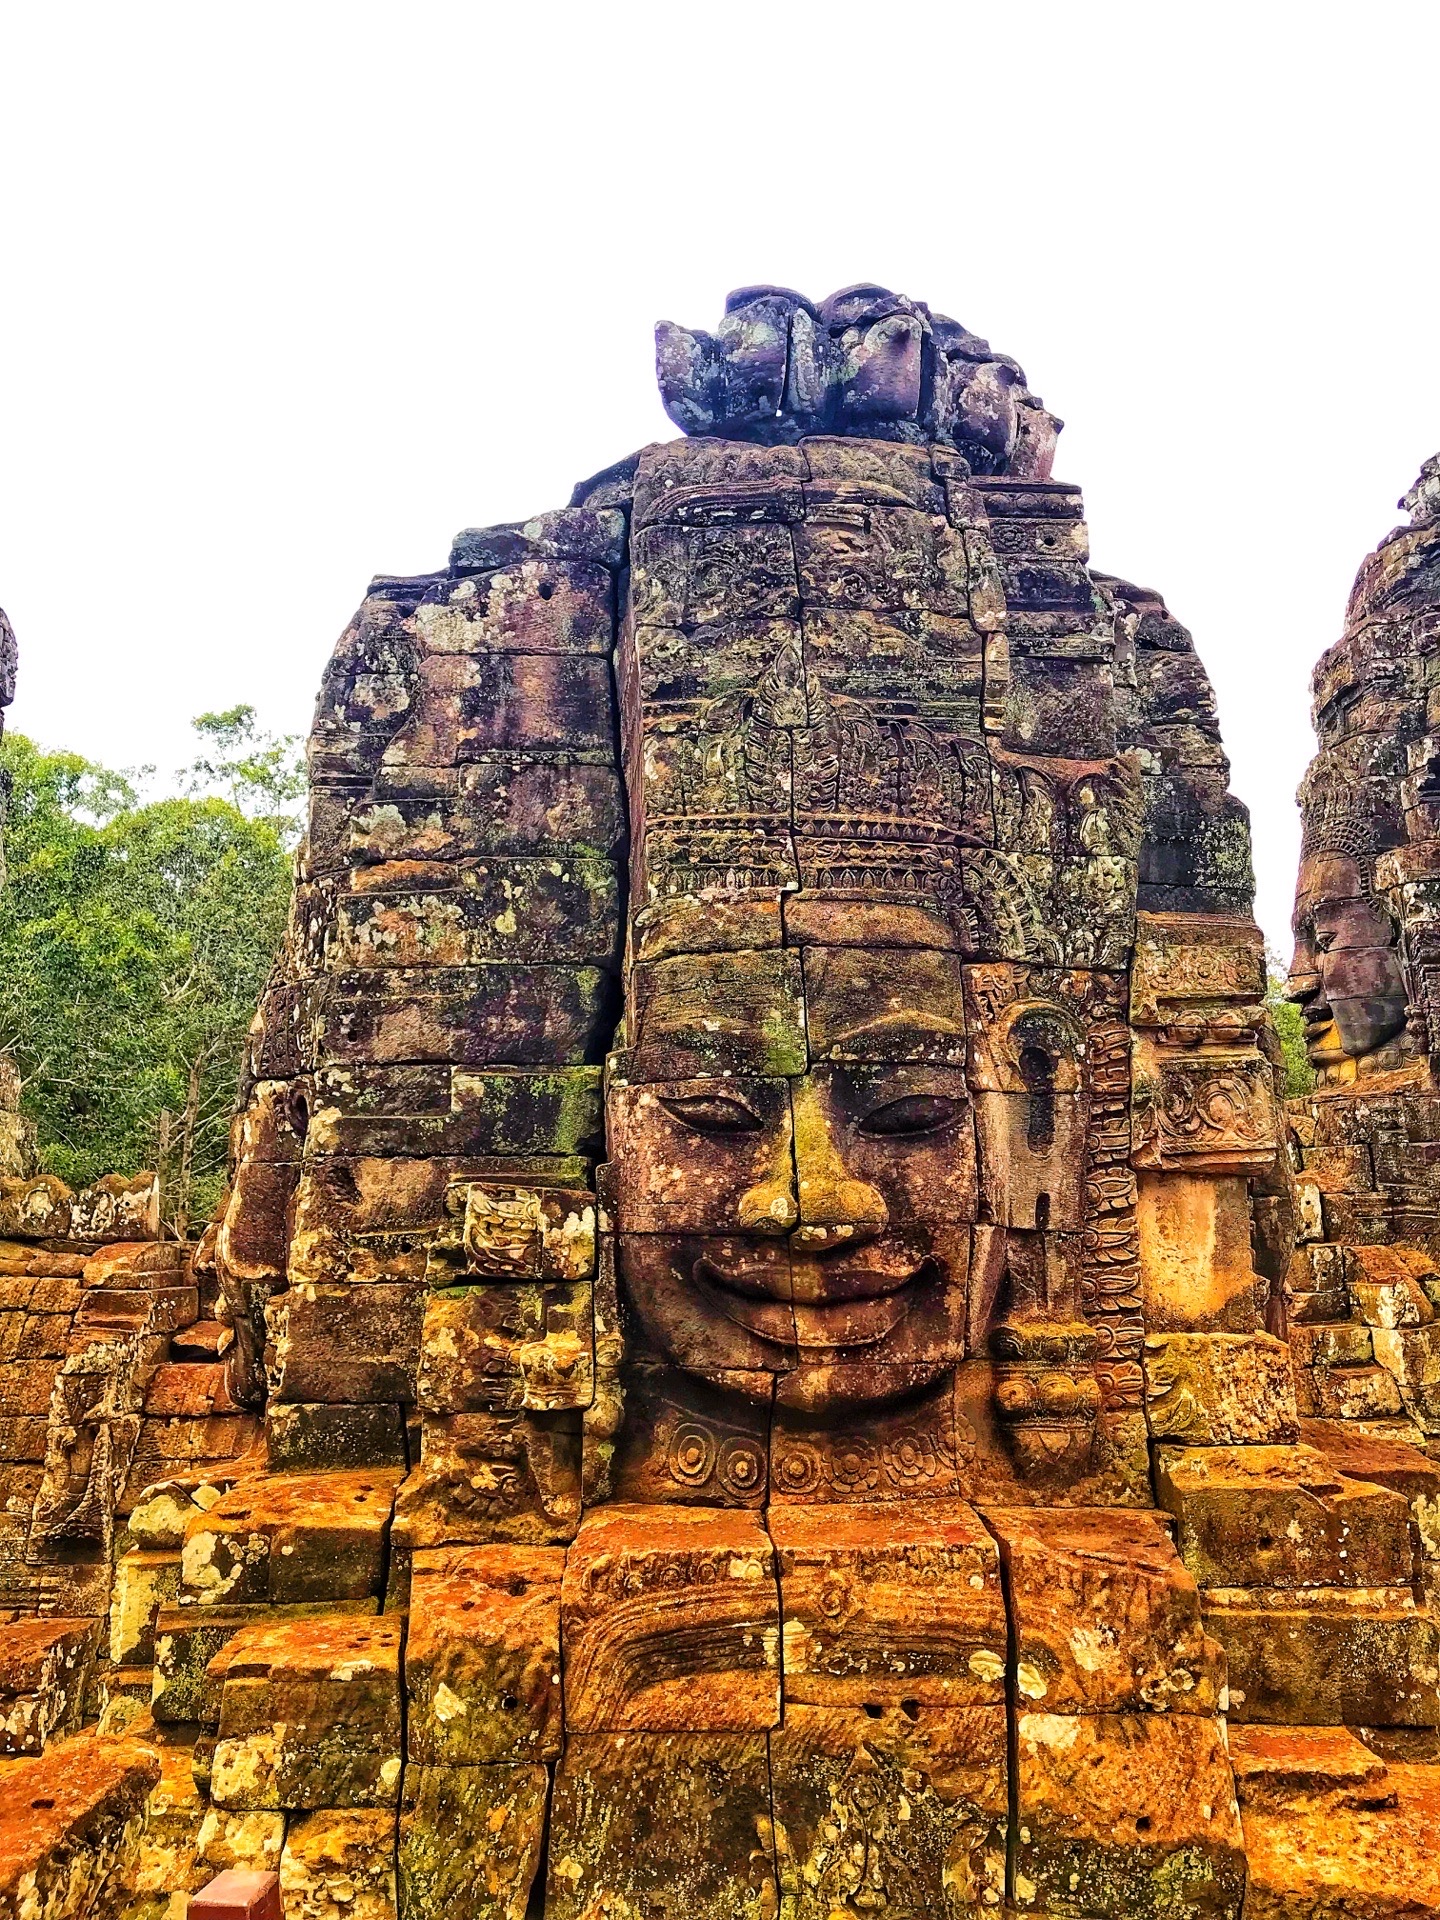 来看最美的微笑😊 高棉的微笑  巴戎寺最出名的就是“高棉的微笑”。 这里由49座宝塔组成，每个塔顶都